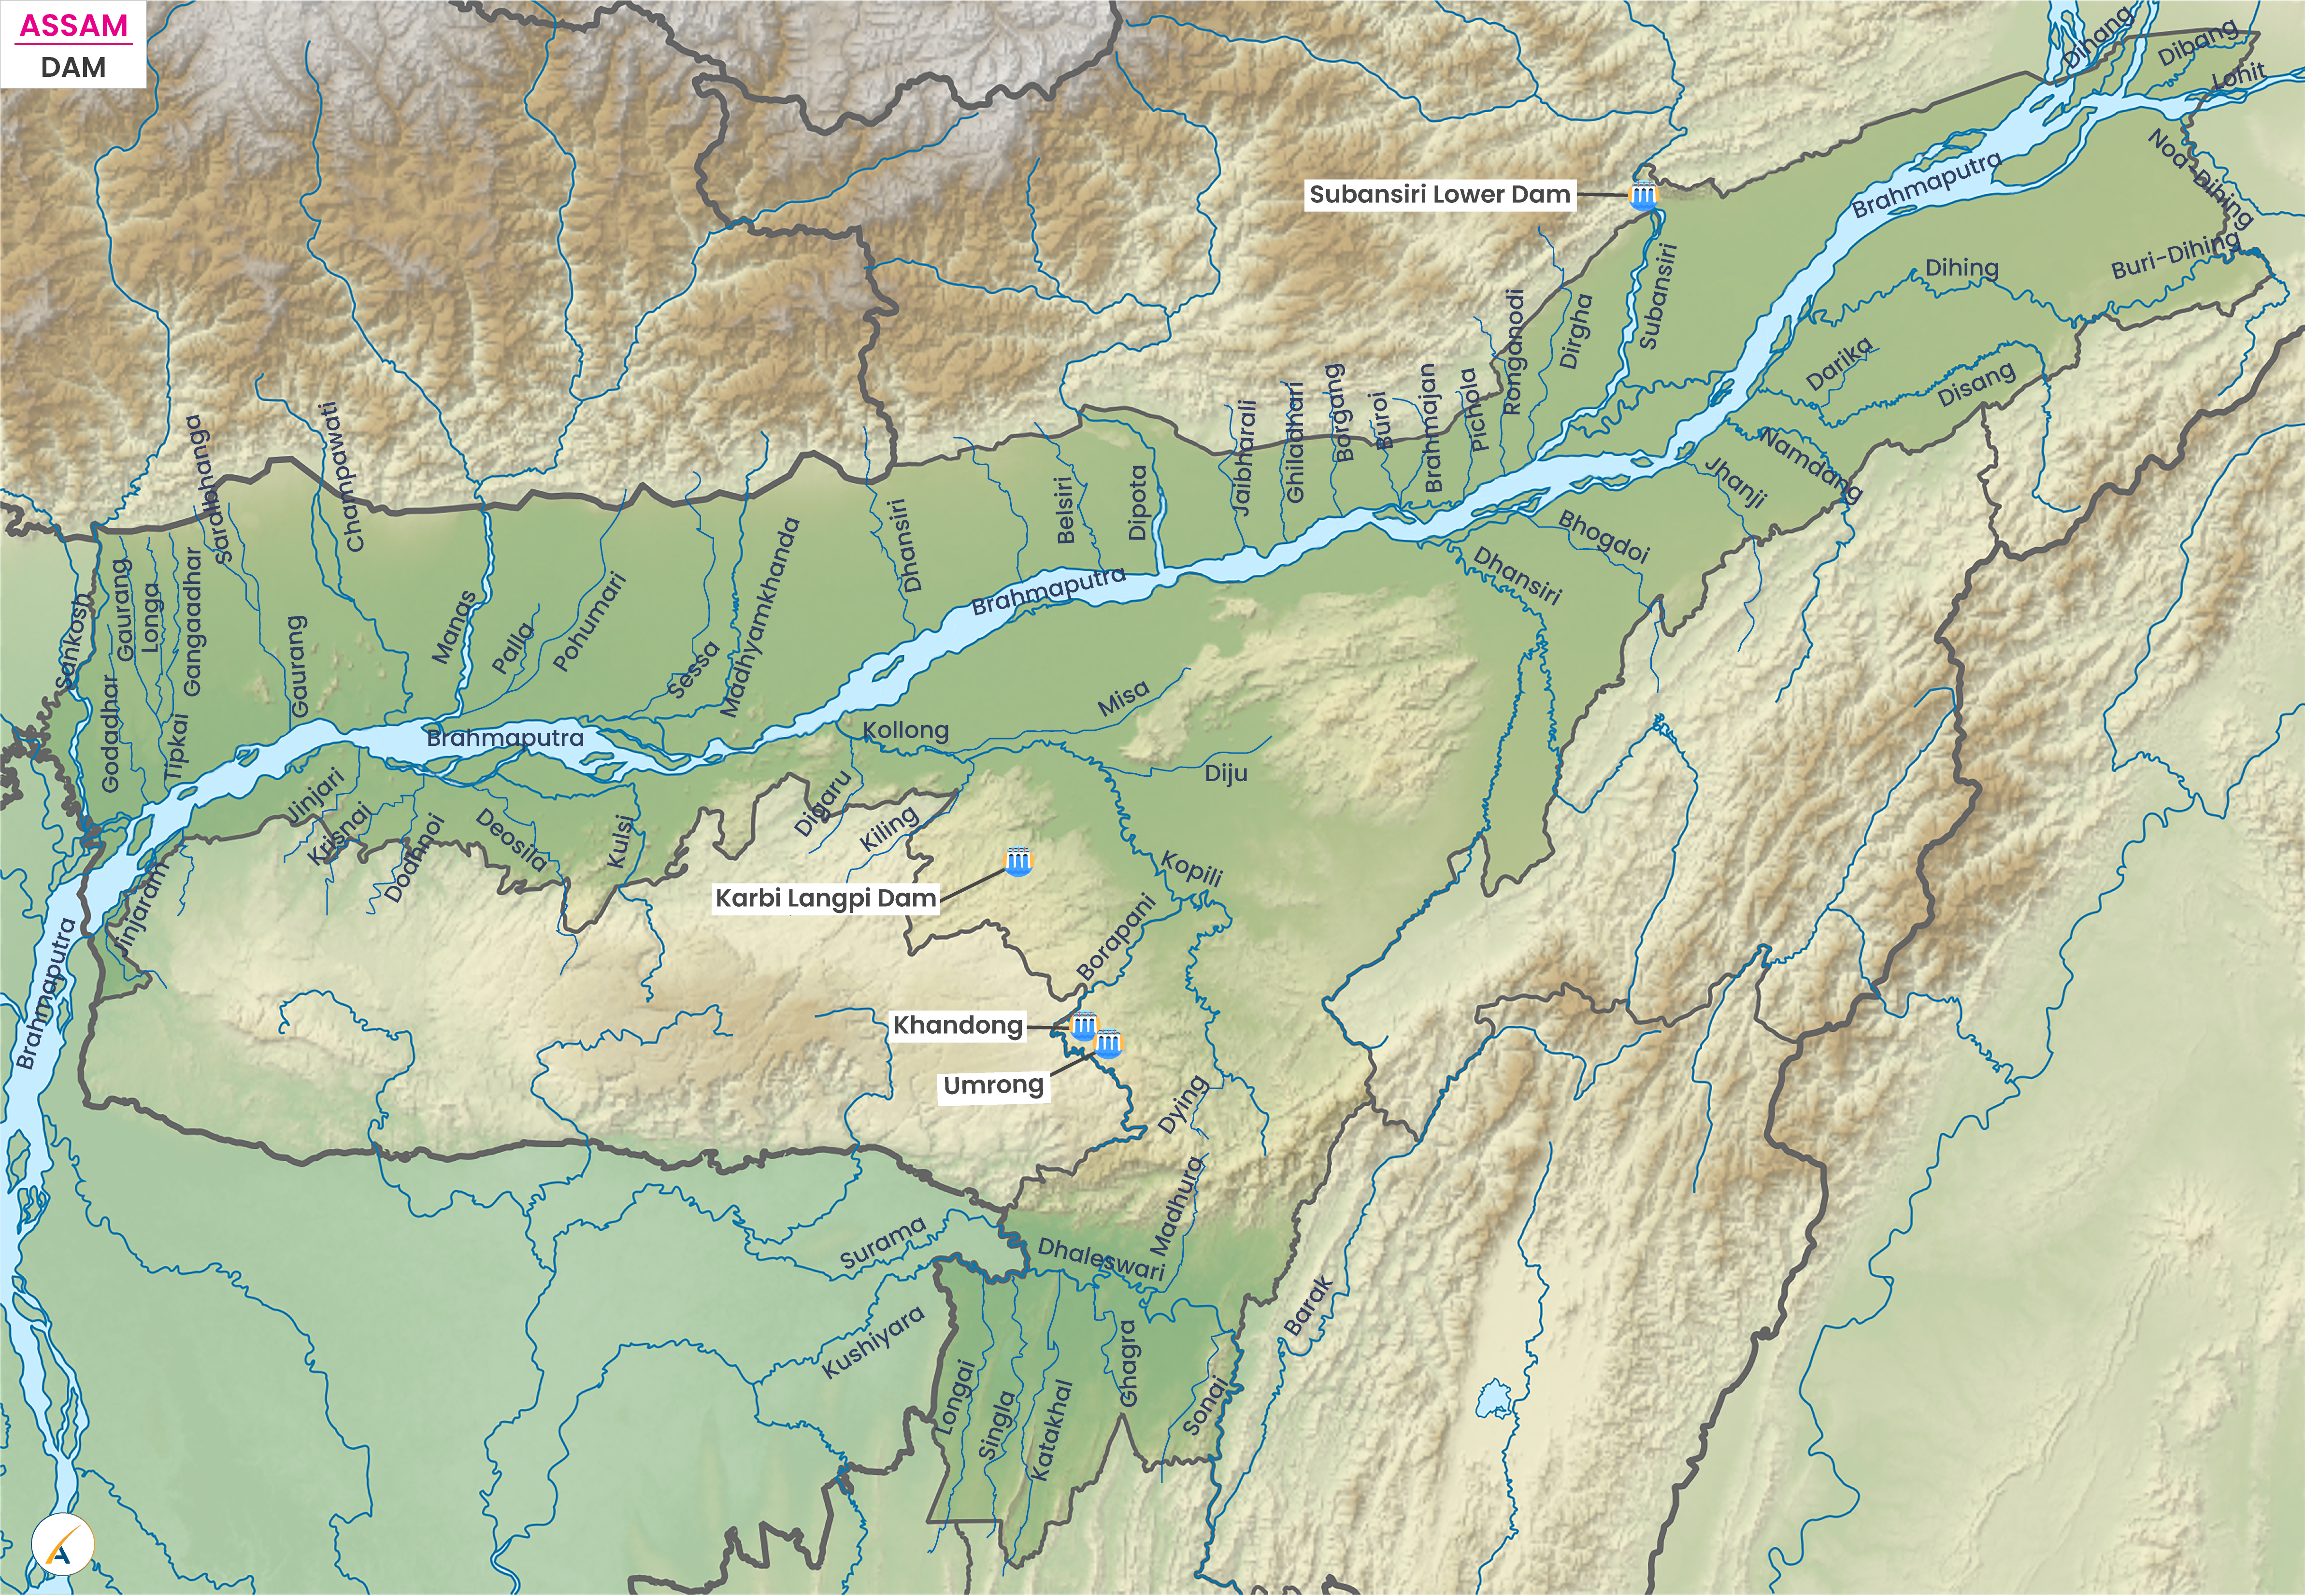 Major Dams in Assam